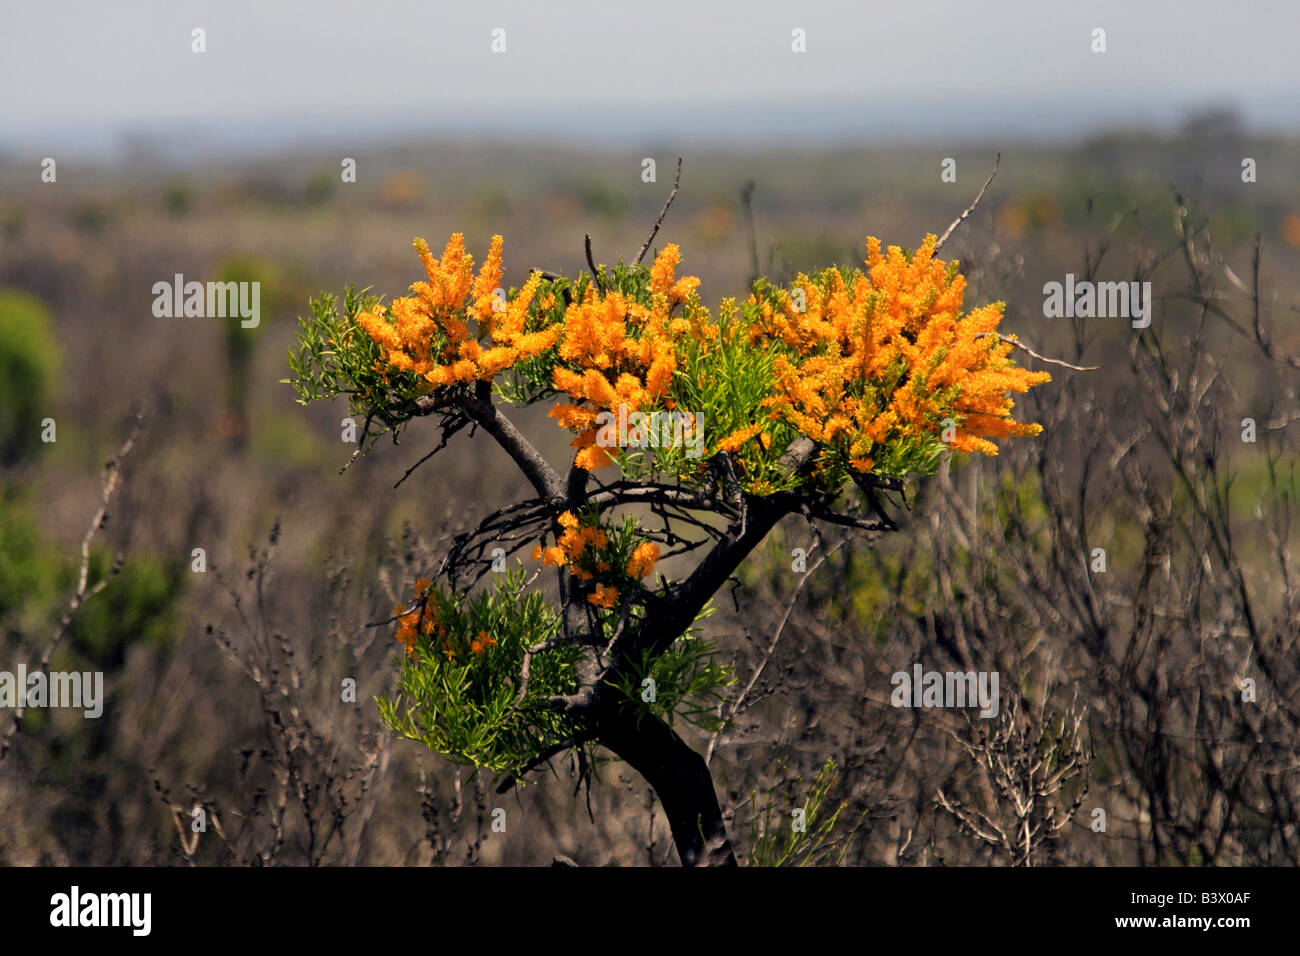 Flowering Wattle Tree in burnt landscape, Western Australia. Stock Photo